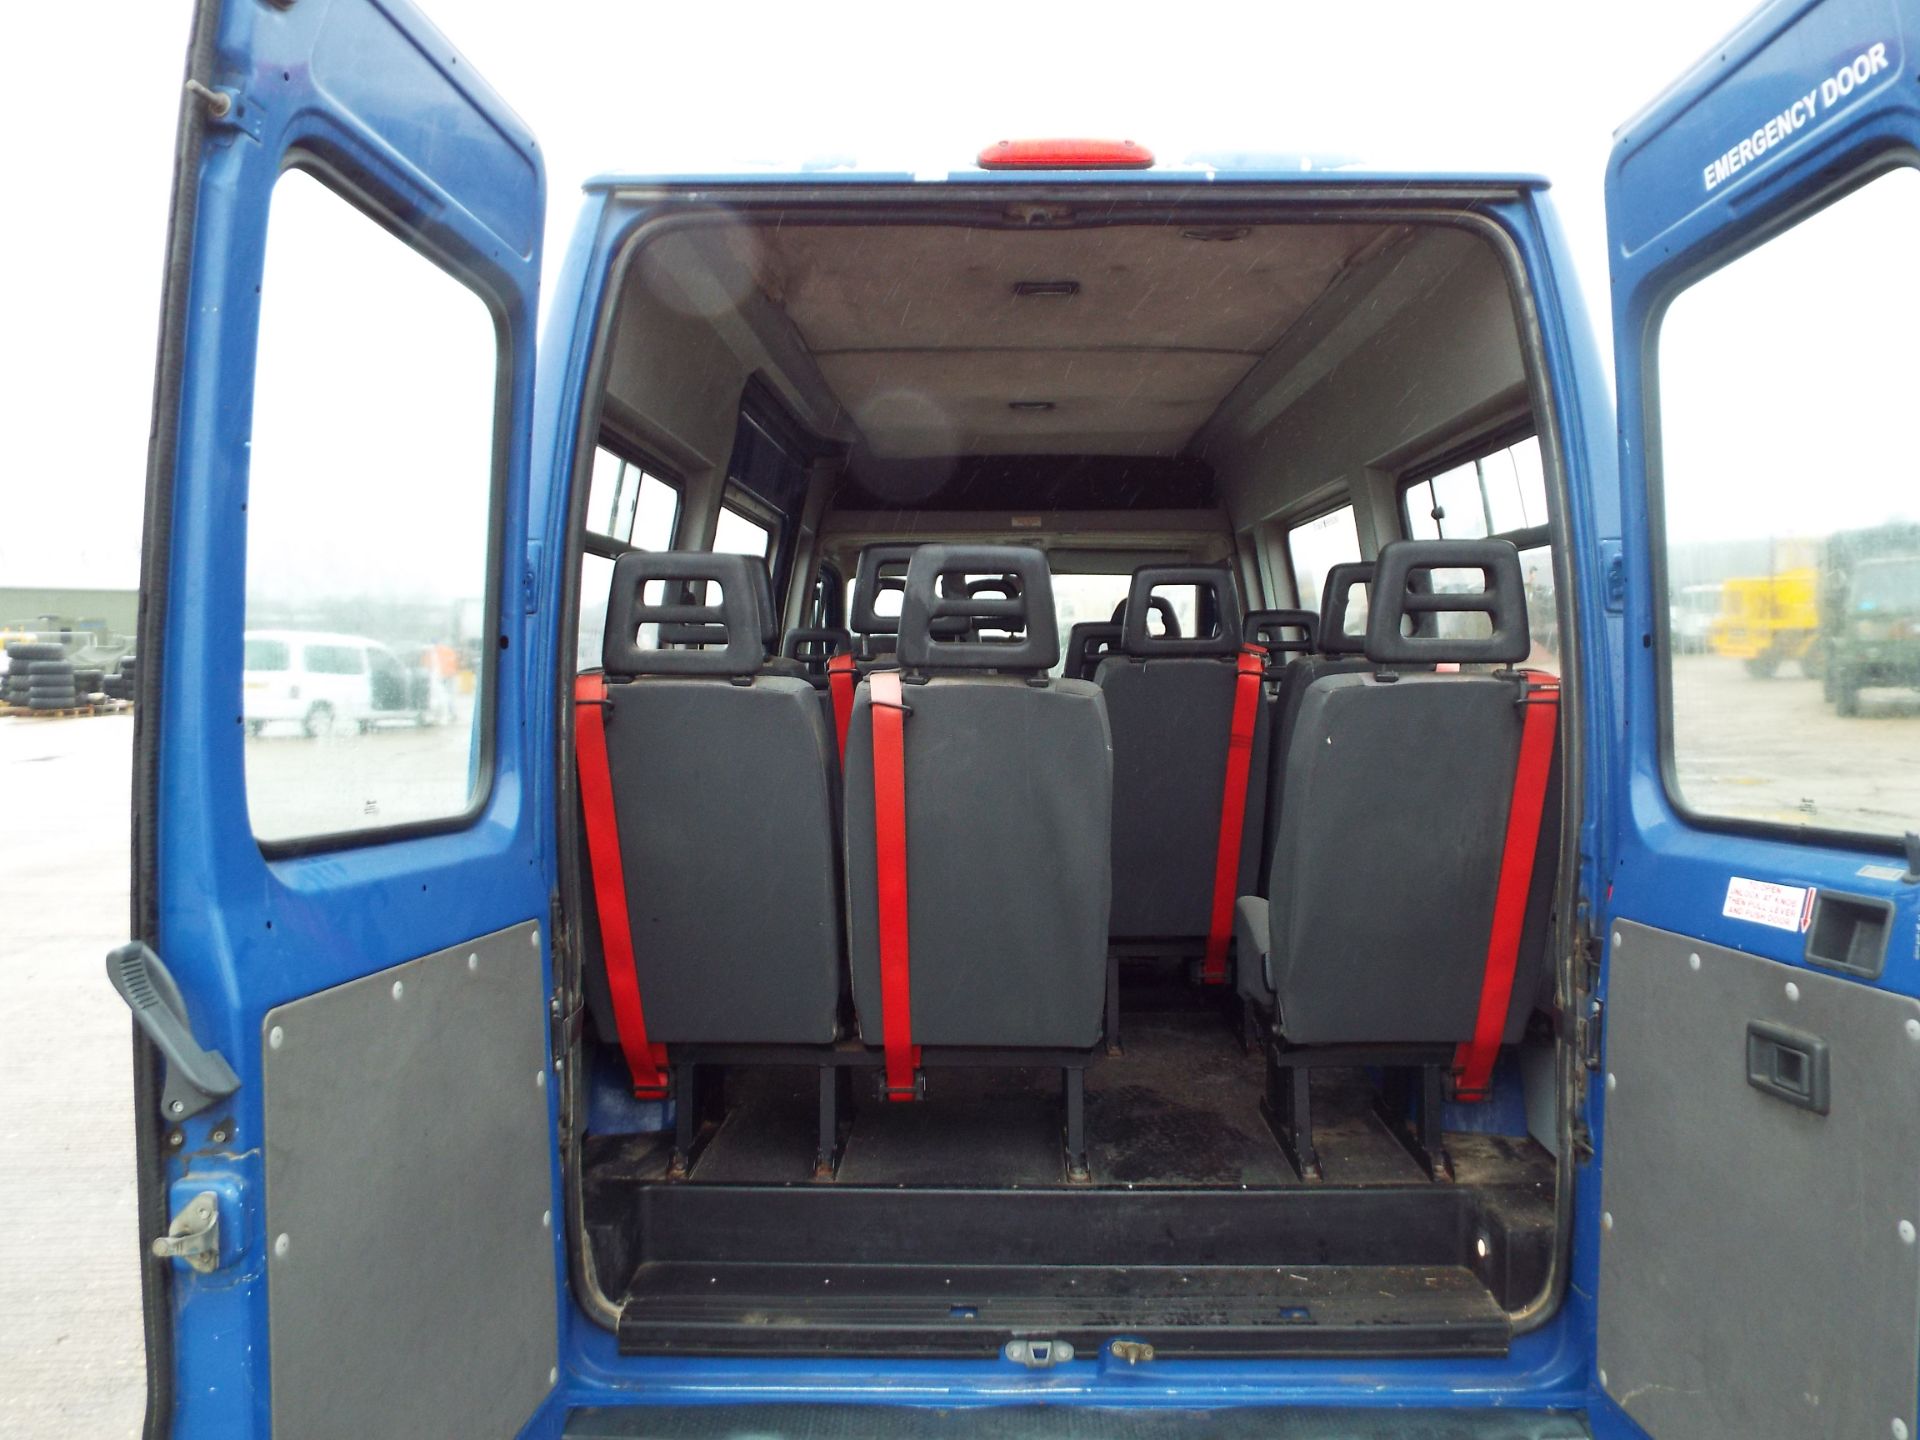 Citroen Relay 17 Seater Minibus - Image 15 of 19